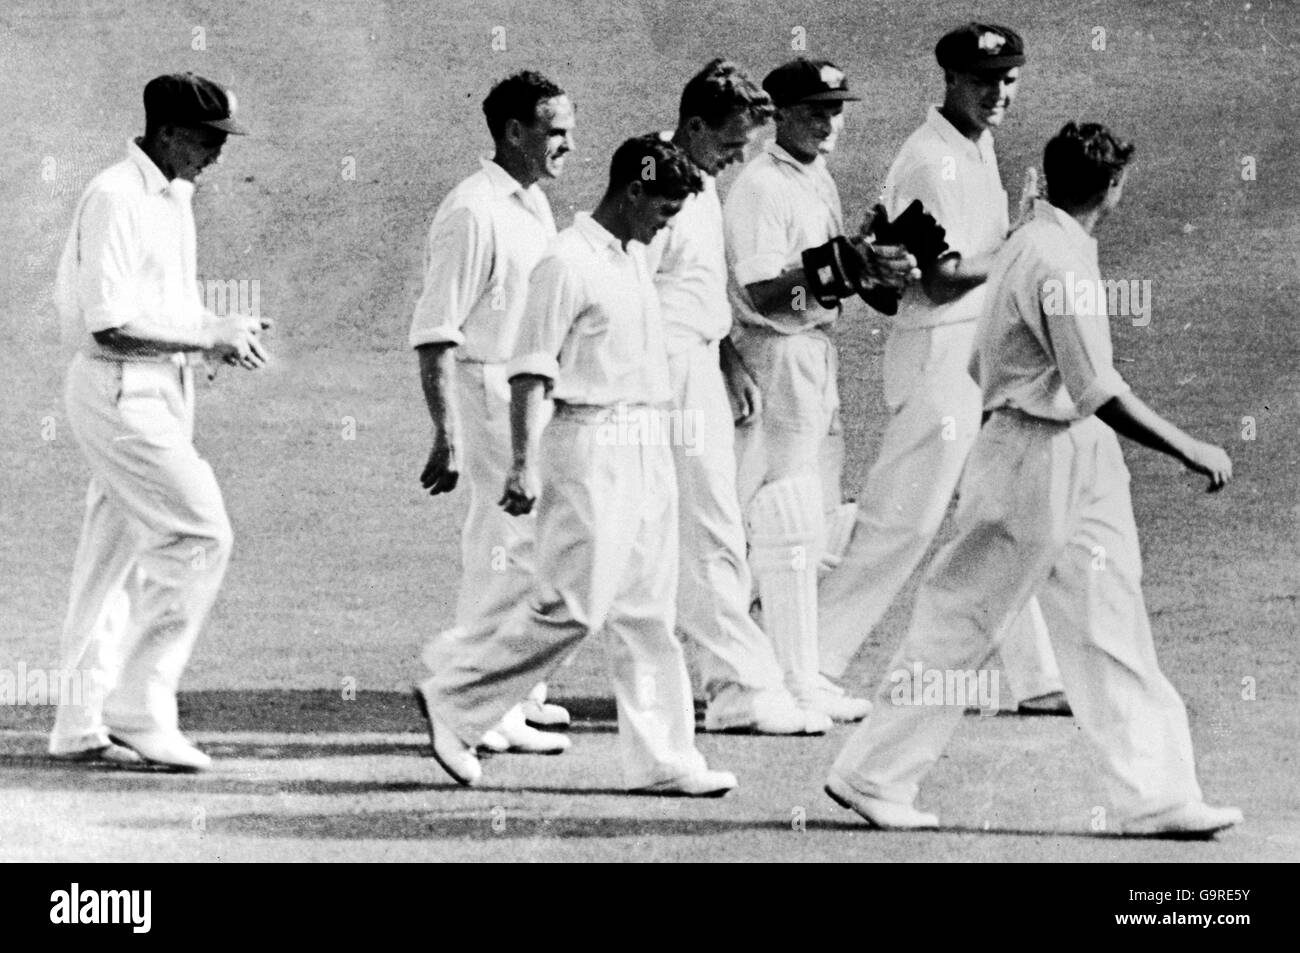 Ray Lindwall (r), un australien, part avec ses coéquipiers après se réclamant de son 100e test de cricket Banque D'Images